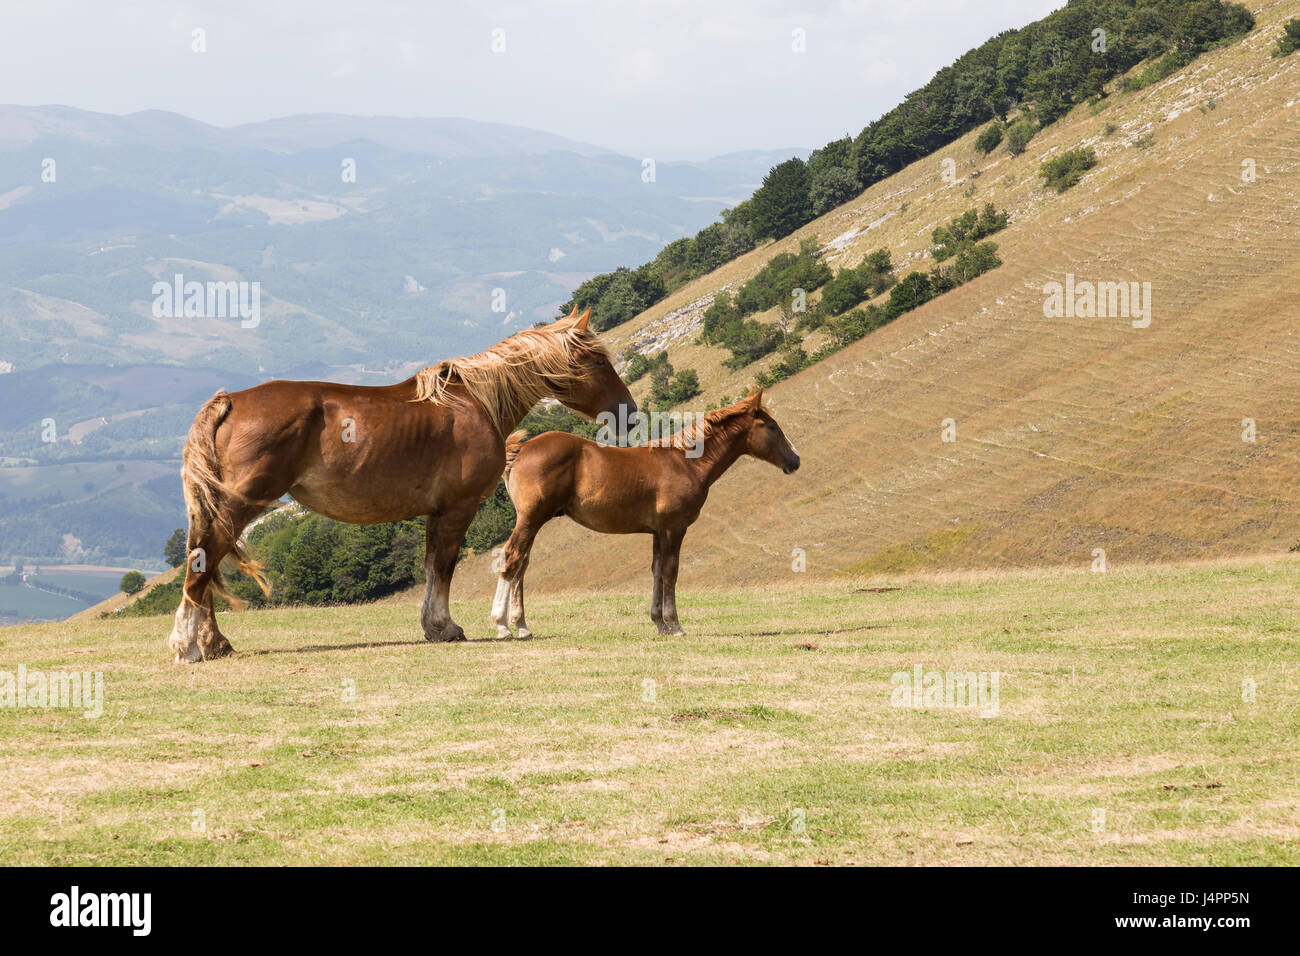 Deux chevaux dans la même posture, regardant dans la même direction, dans un paysage de montagne Banque D'Images